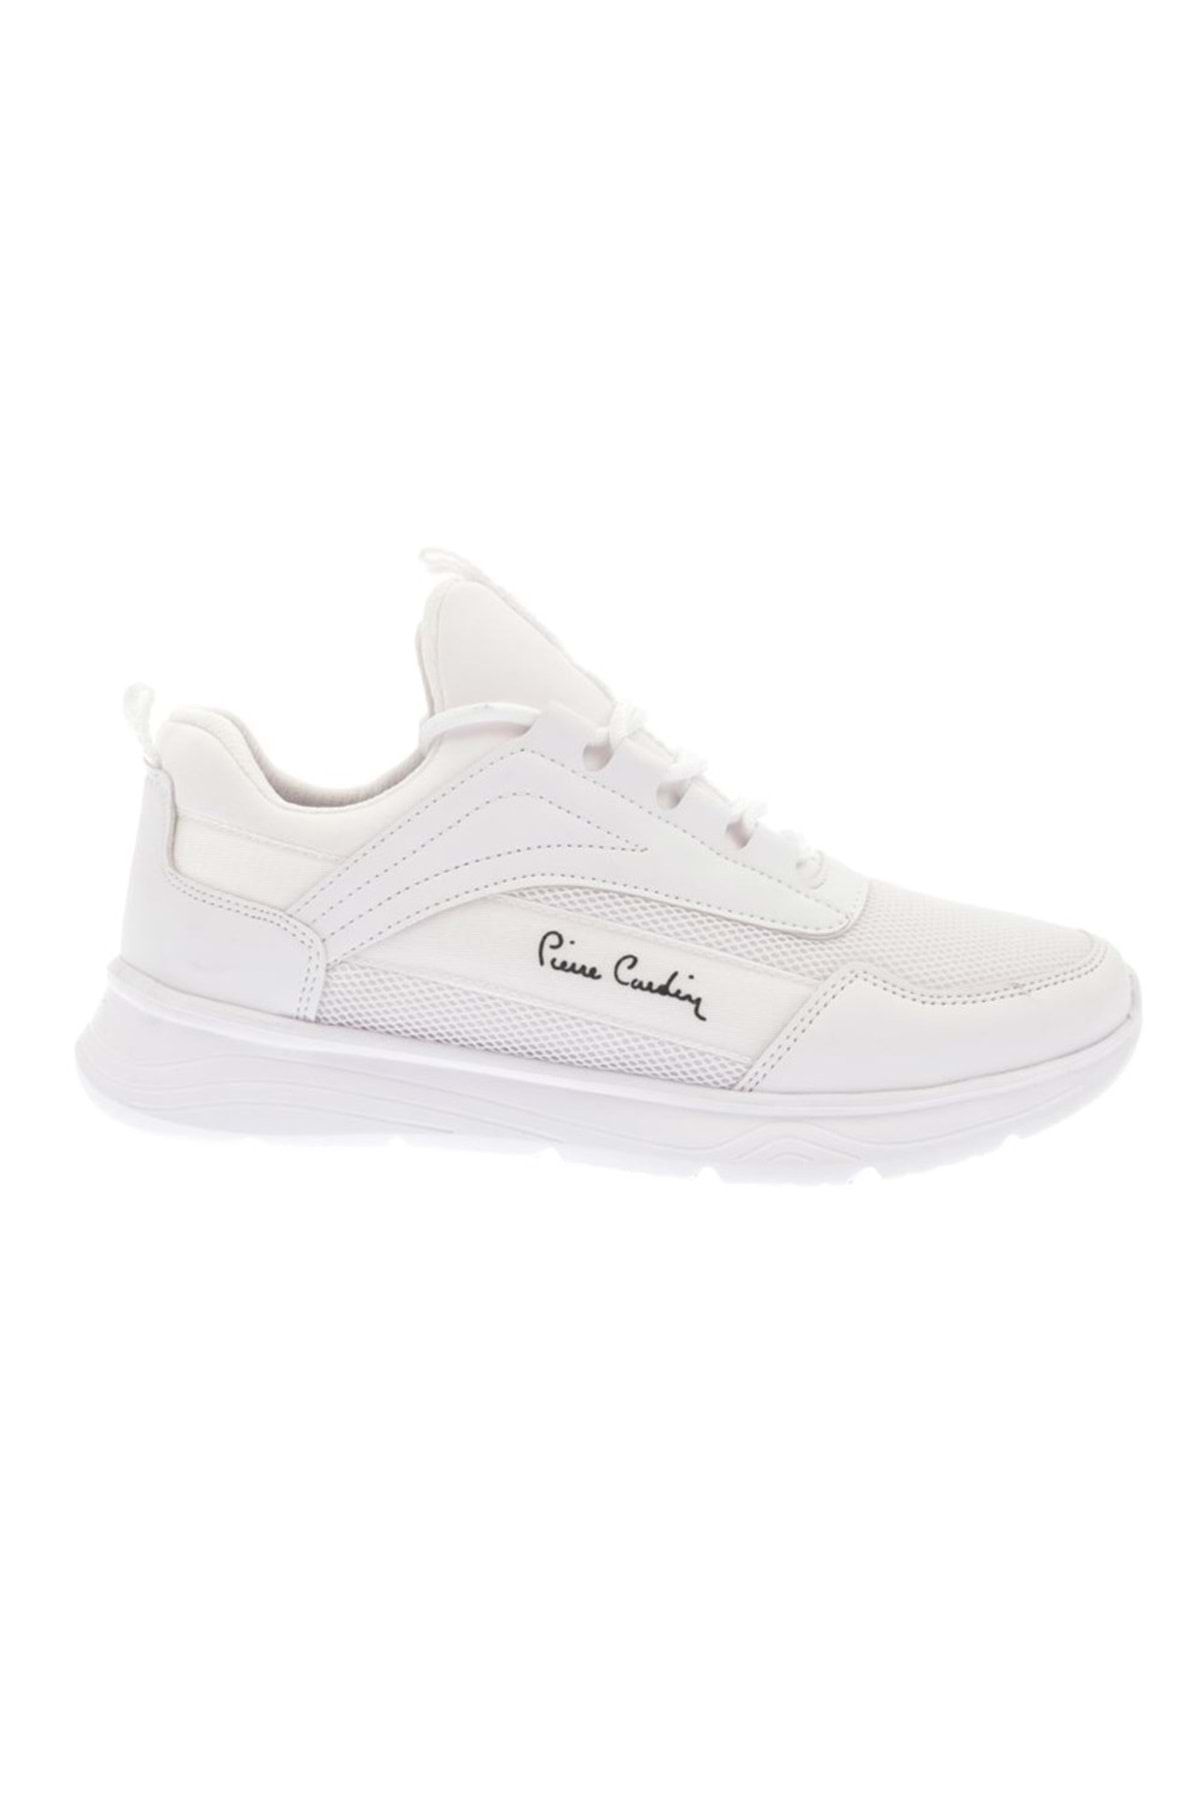 Pierre Cardin Pc-30585 Unisex Sneaker Ayakkabı Beyaz